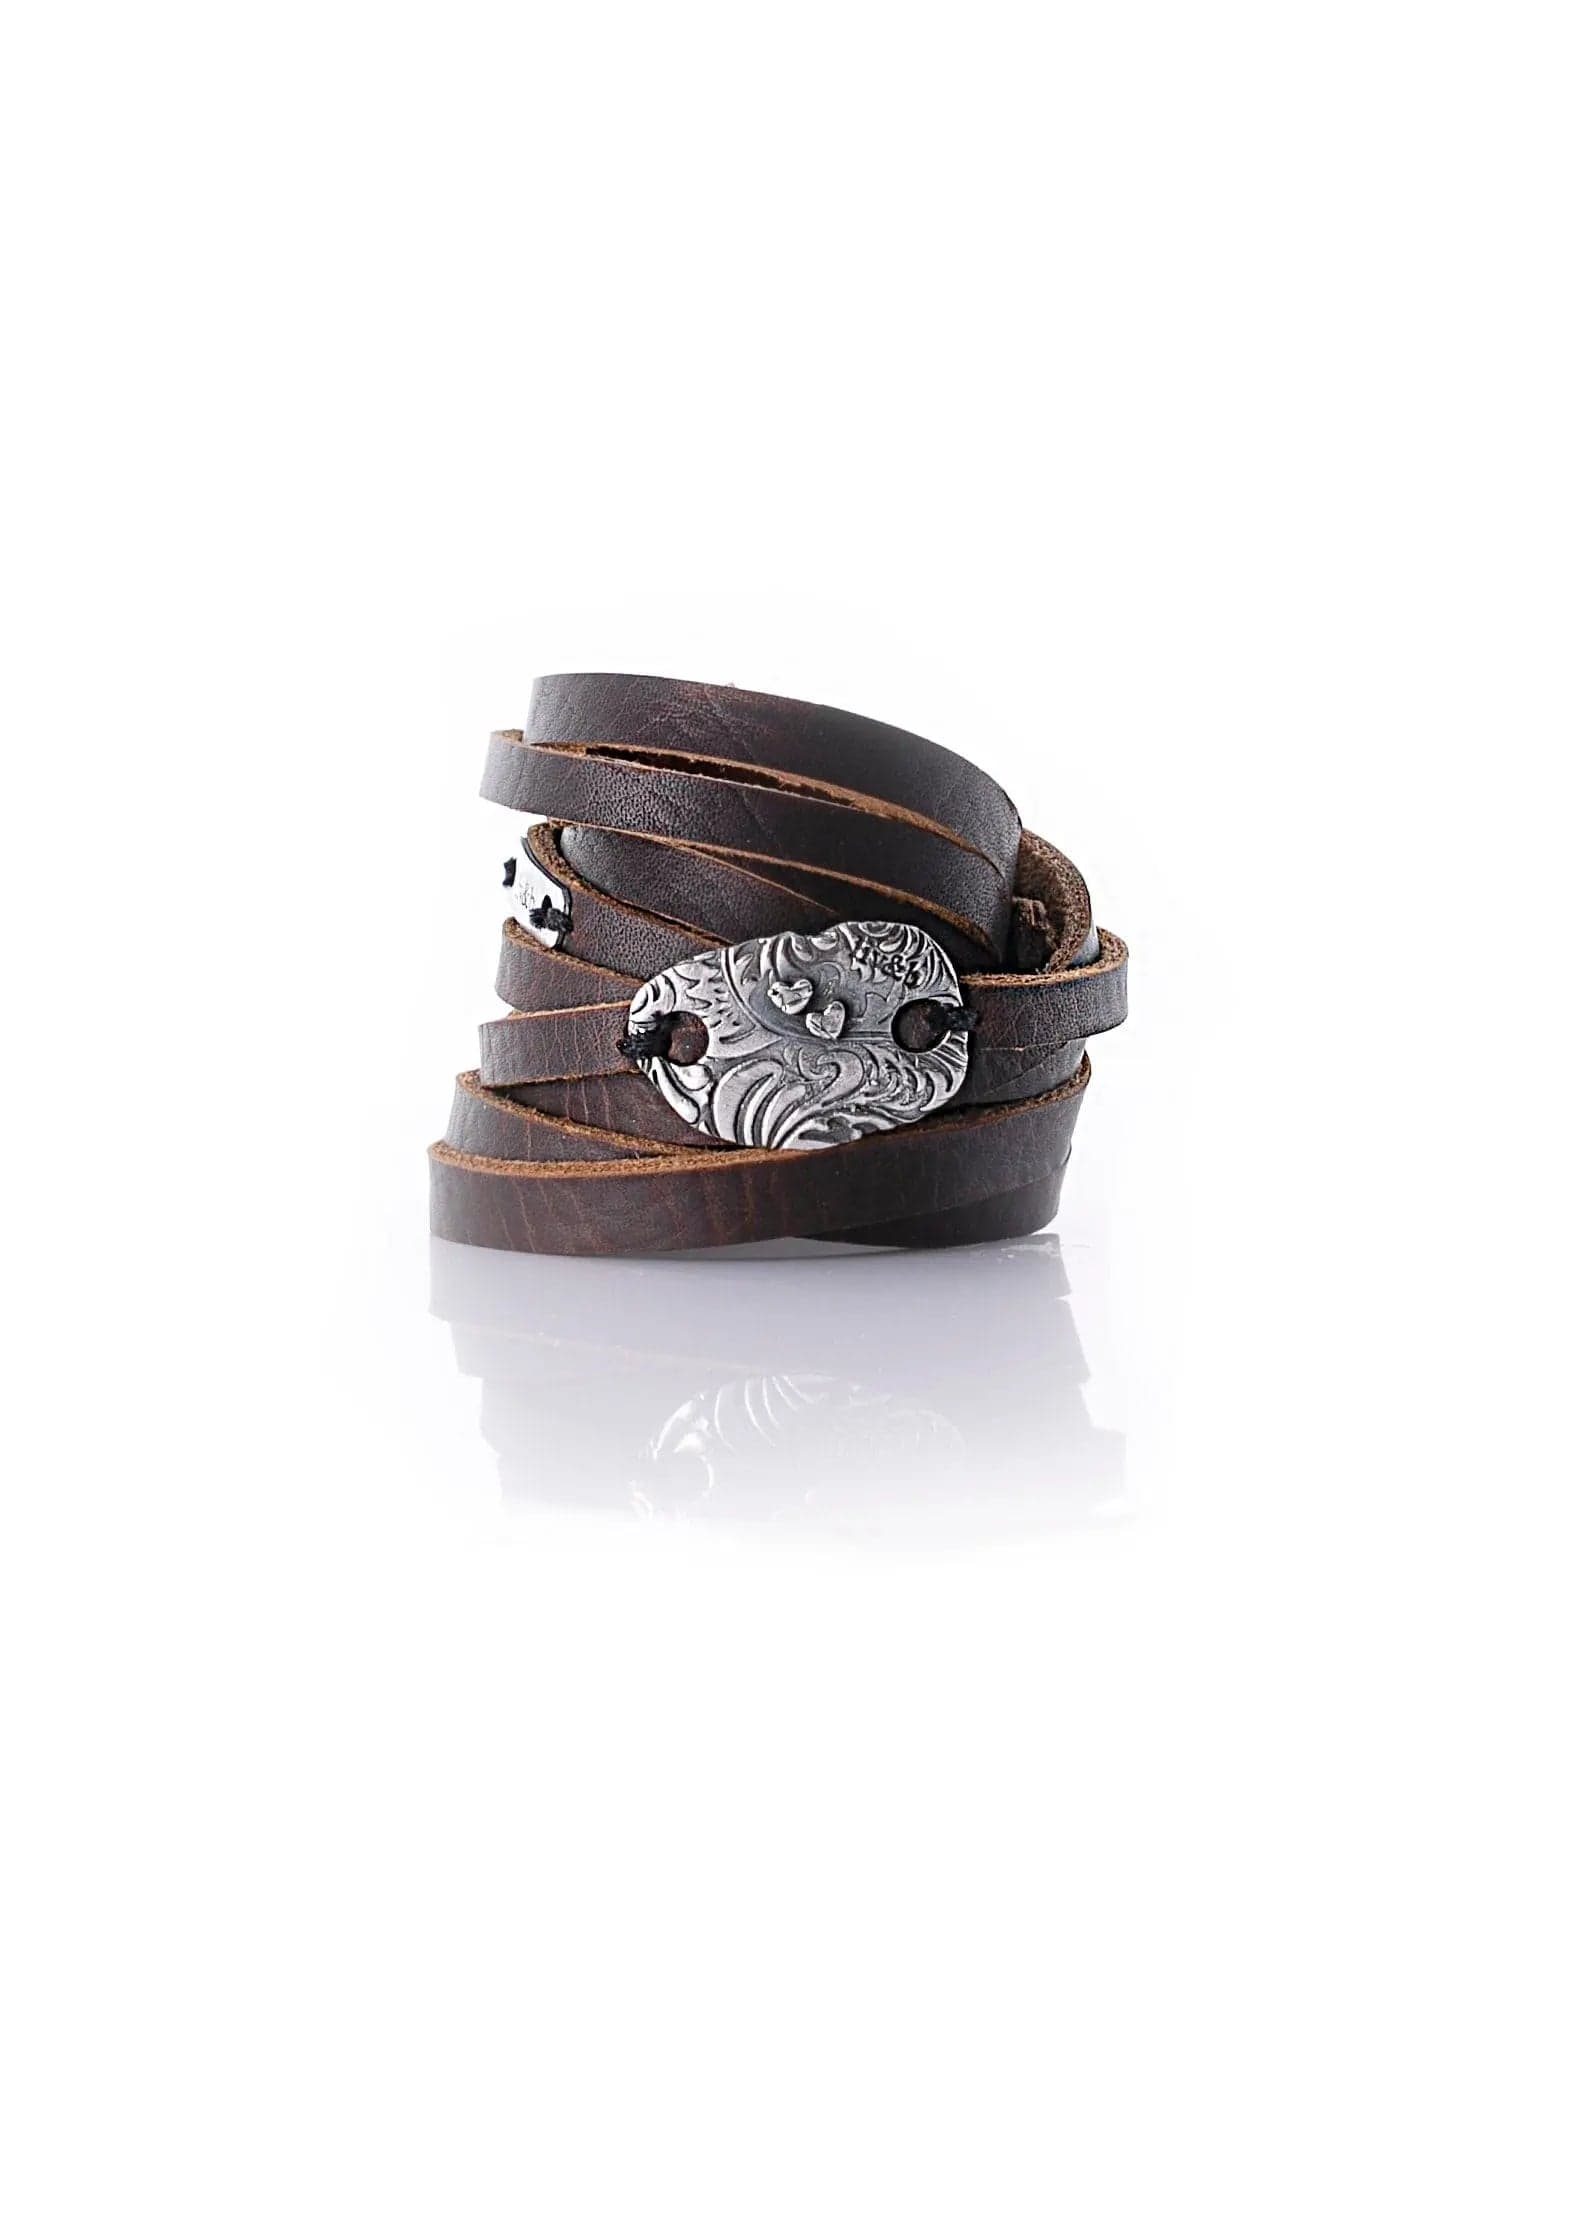 Double Wrap Leather Cuff Bracelet Liv & B Designs